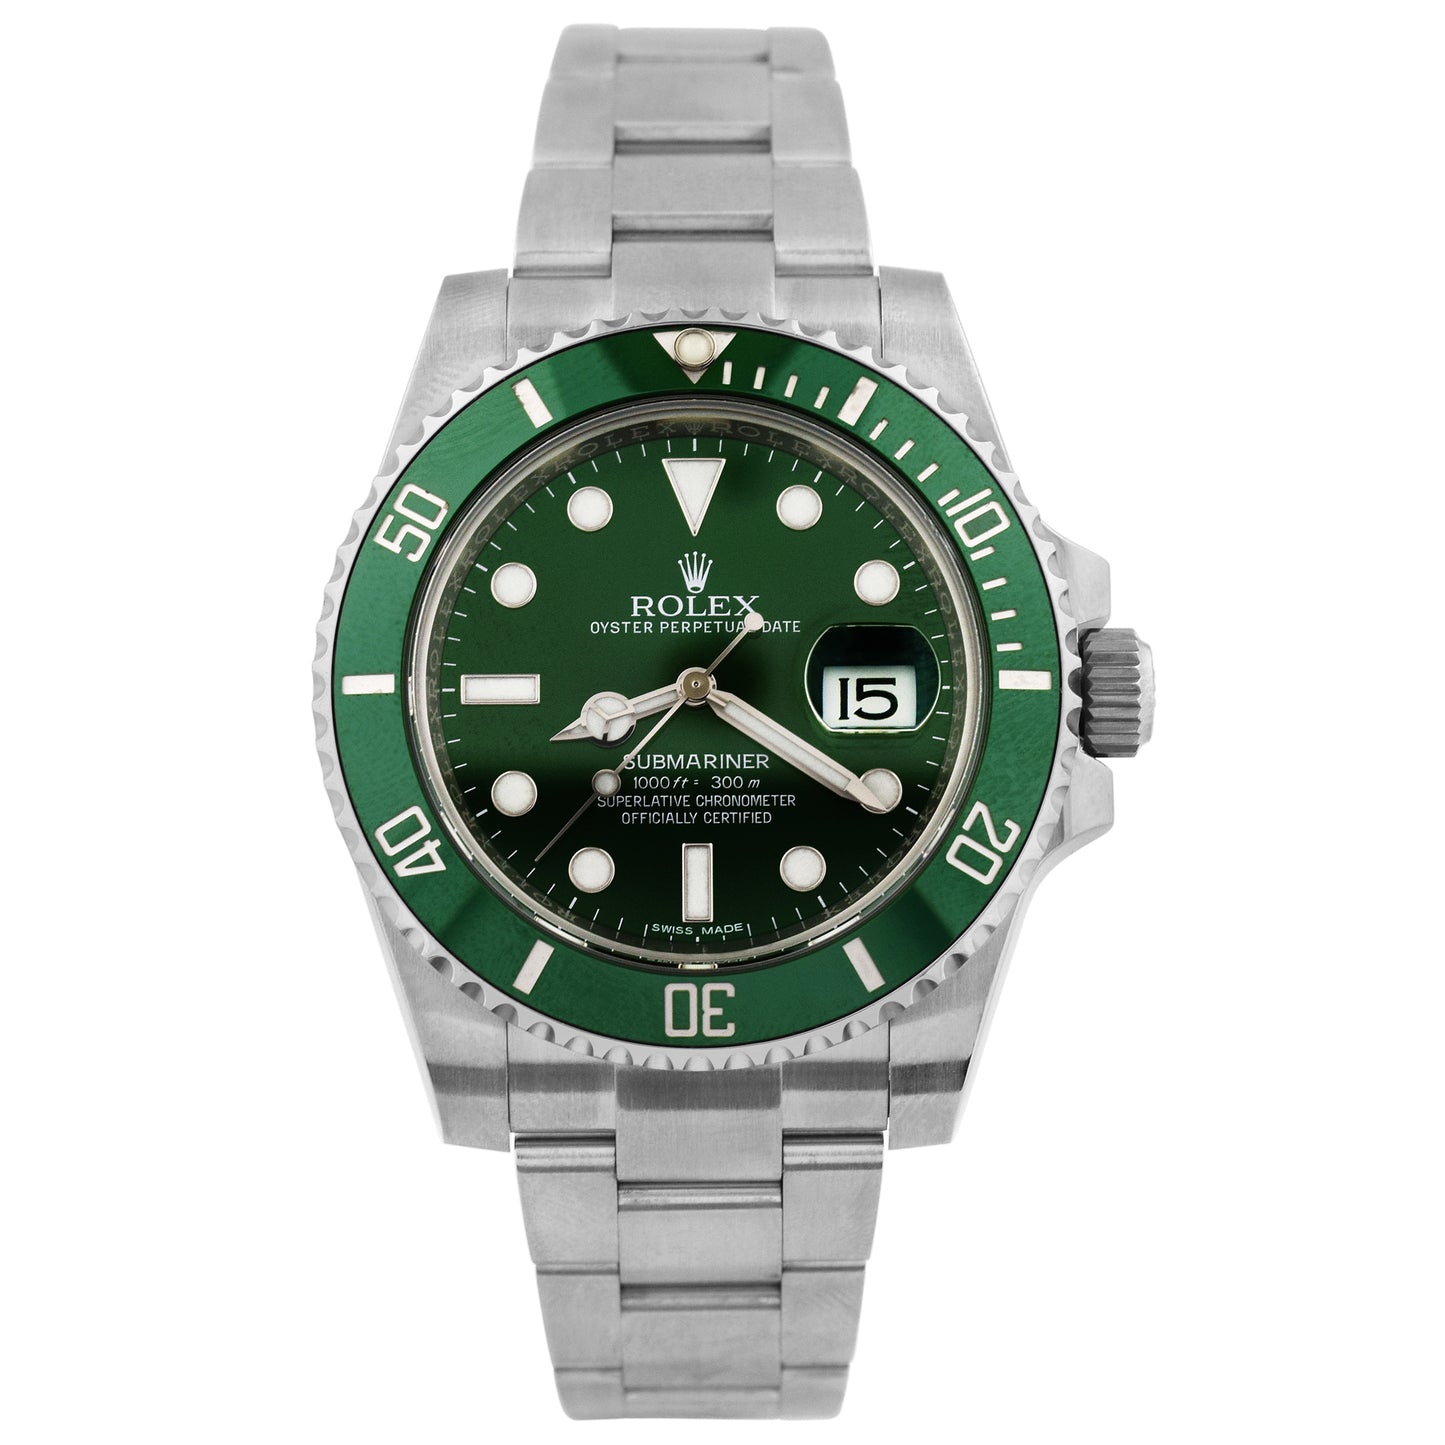 Rolex Submariner Men's Stainless Steel Watch 116610 LV Hulk